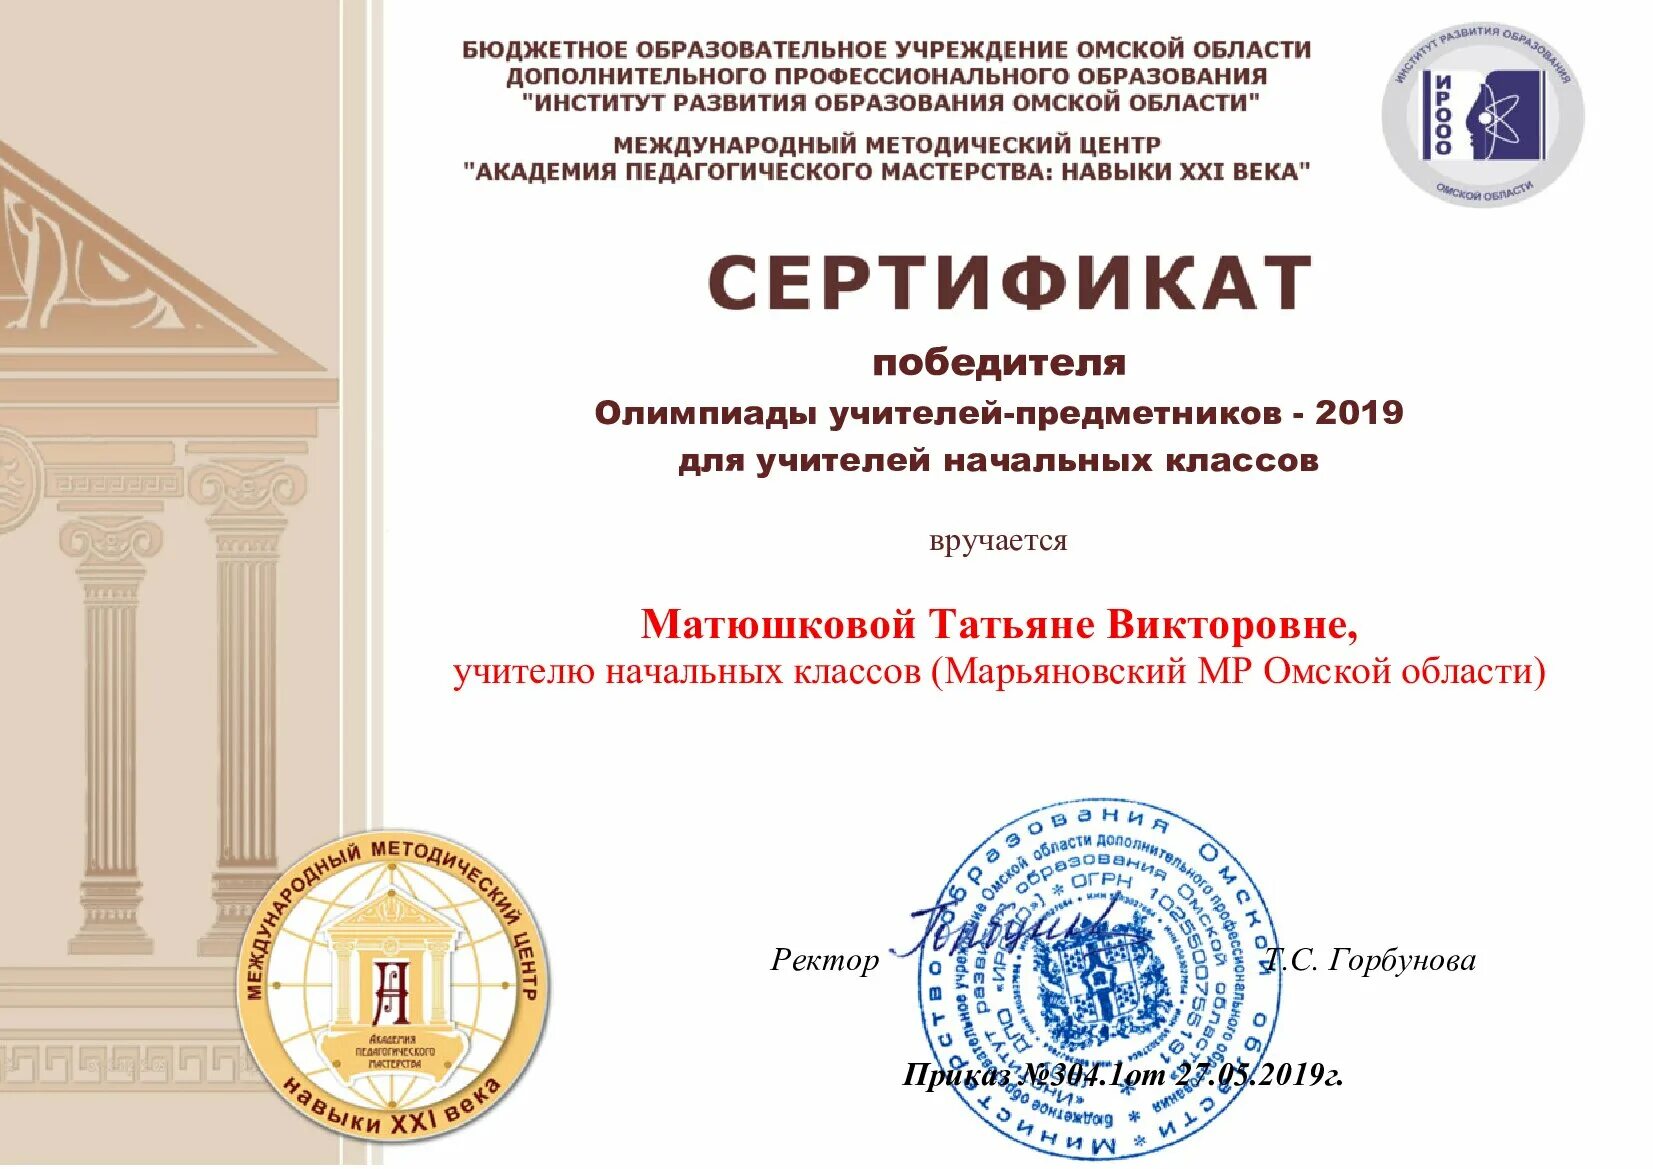 Бюджетные профессиональные образовательные учреждения омской области. Конкурса Академия пед мастерства победитель.